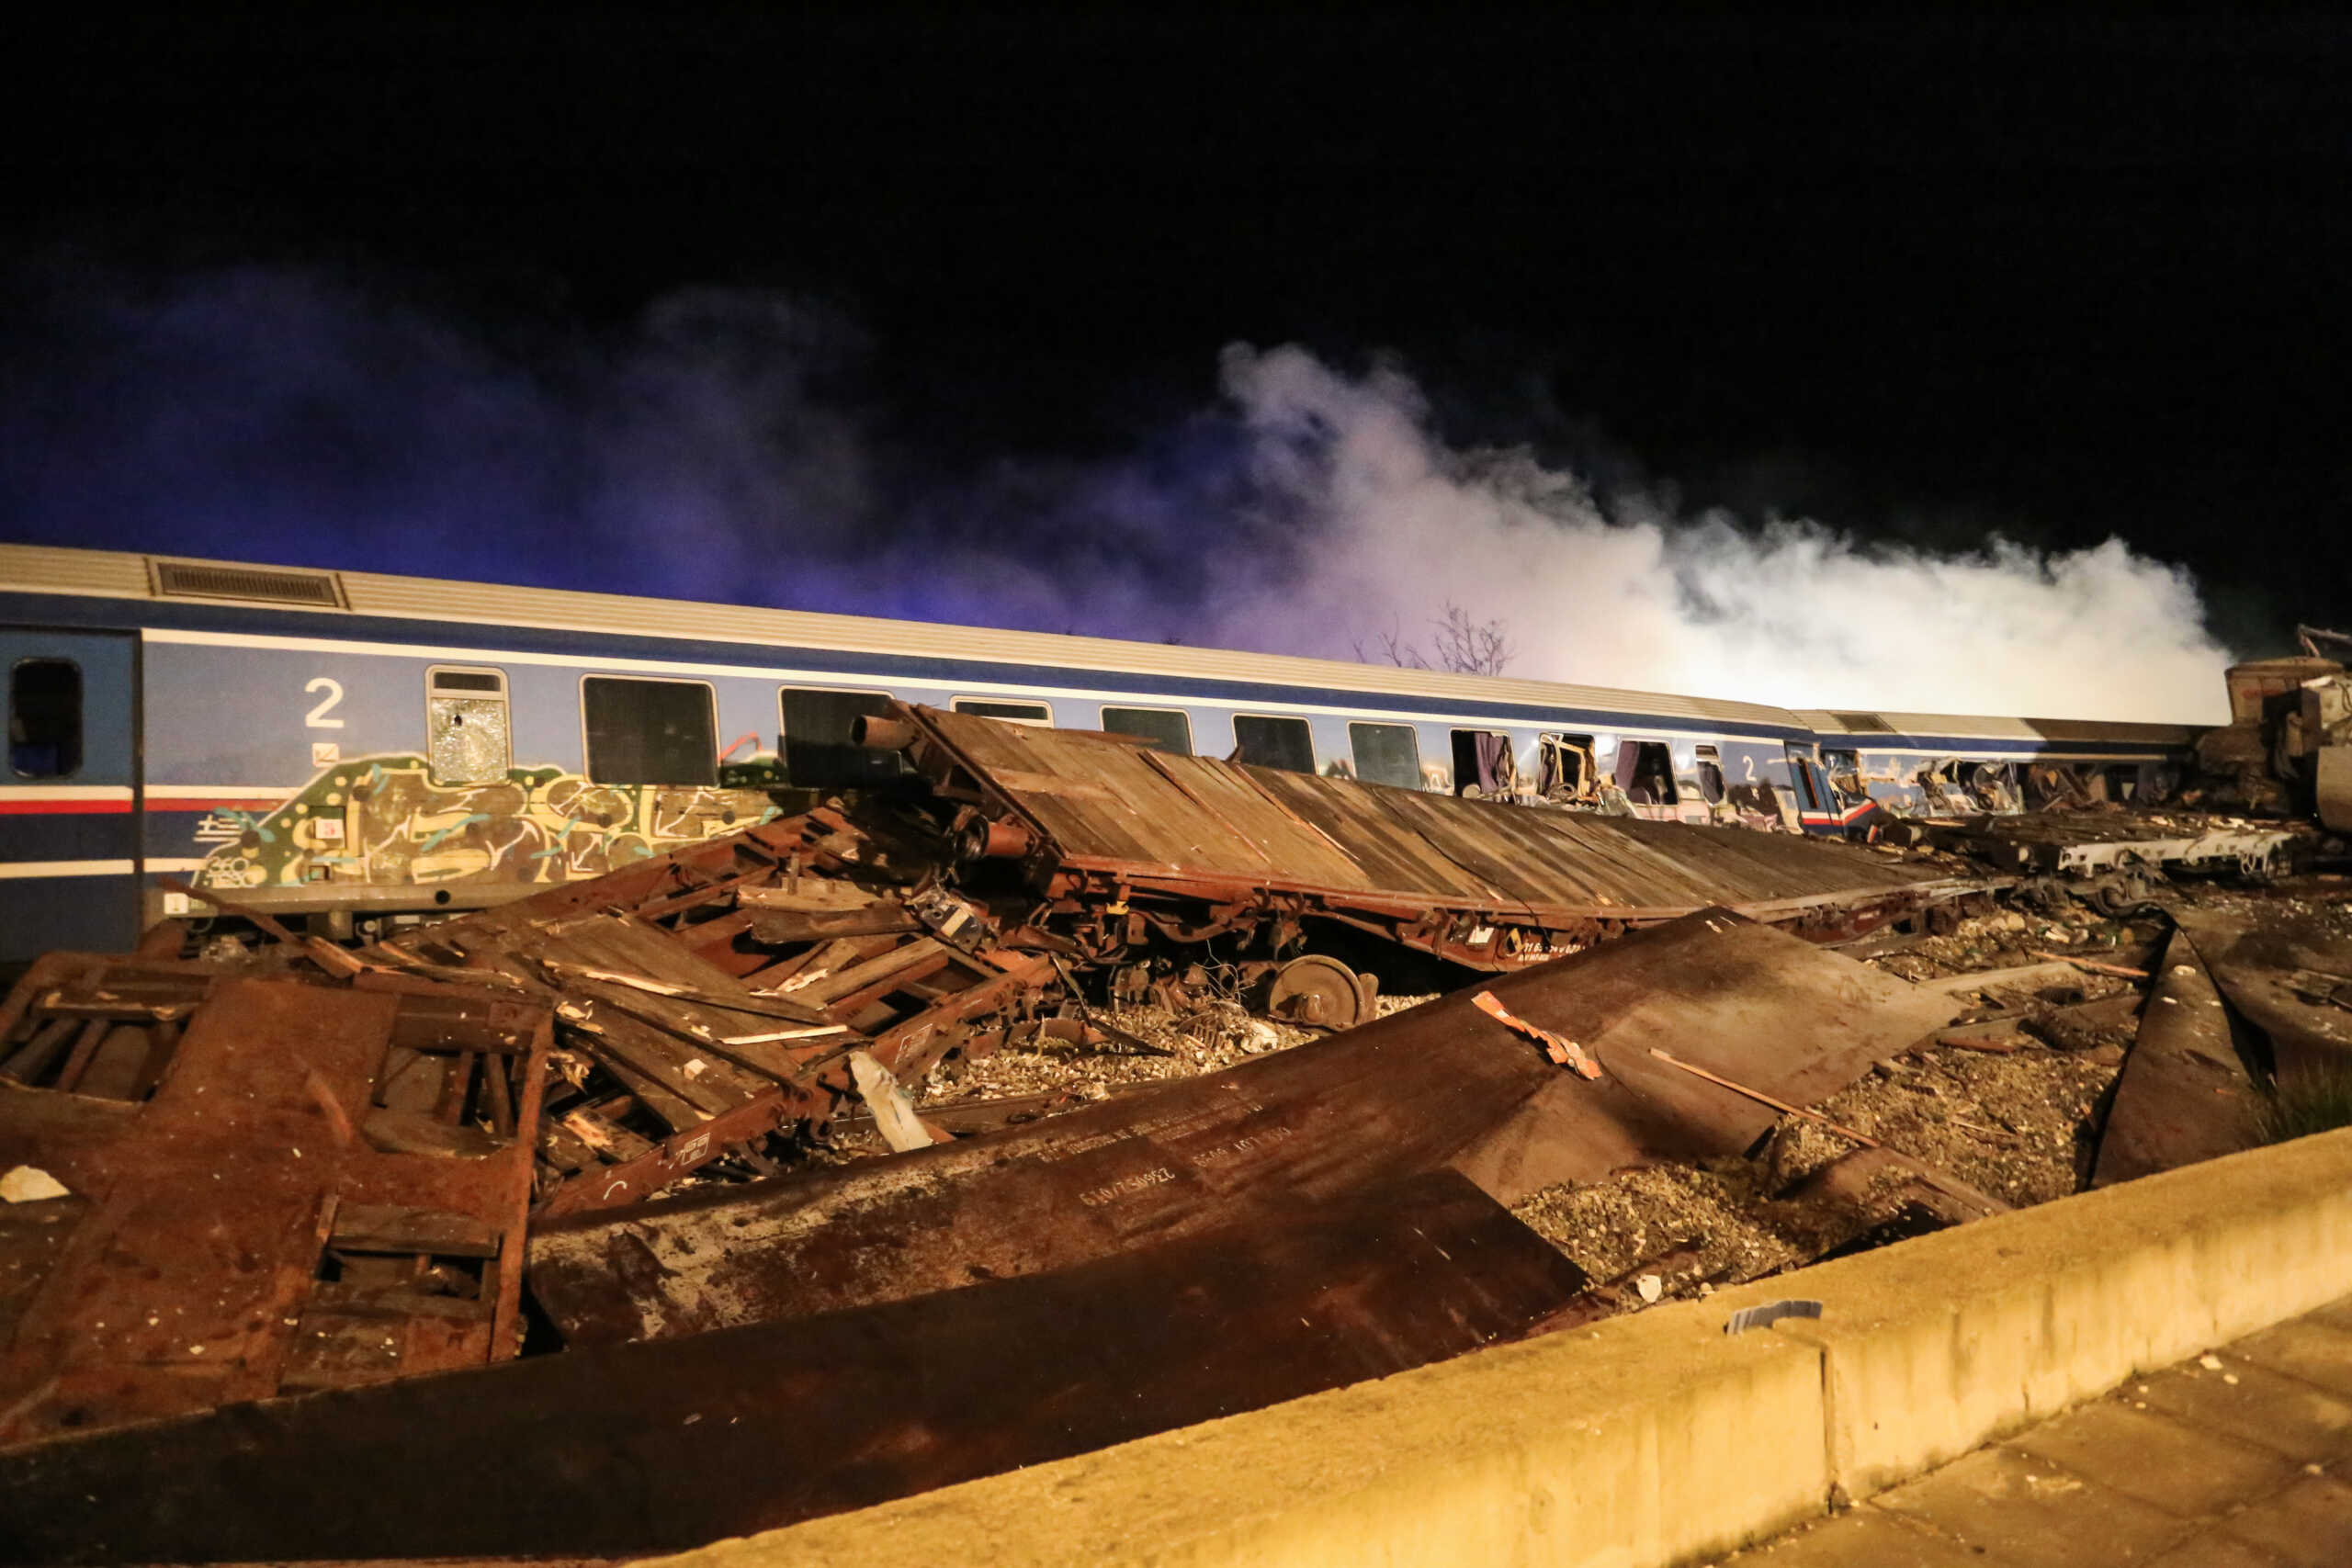 Τέμπη: Οι παραλείψεις στην έρευνα για το σιδηροδρομικό δυστύχημα σύμφωνα με τους πραγματογνώμονες των συγγενών